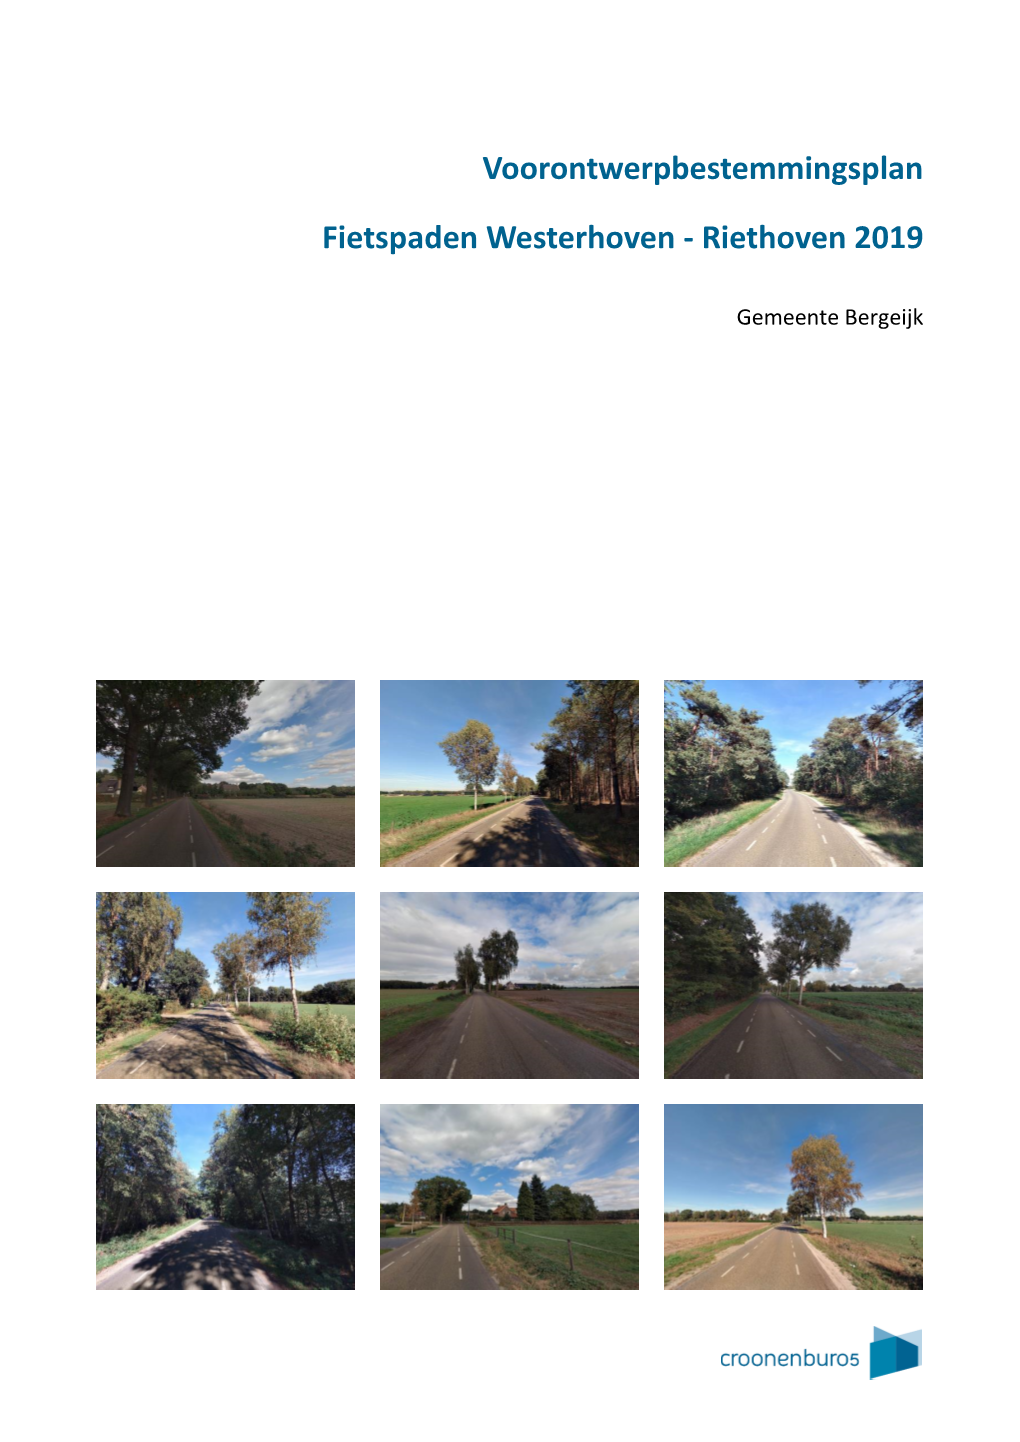 Voorontwerpbestemmingsplan Fietspaden Westerhoven – Riethoven 2019 Gemeente Bergeijk